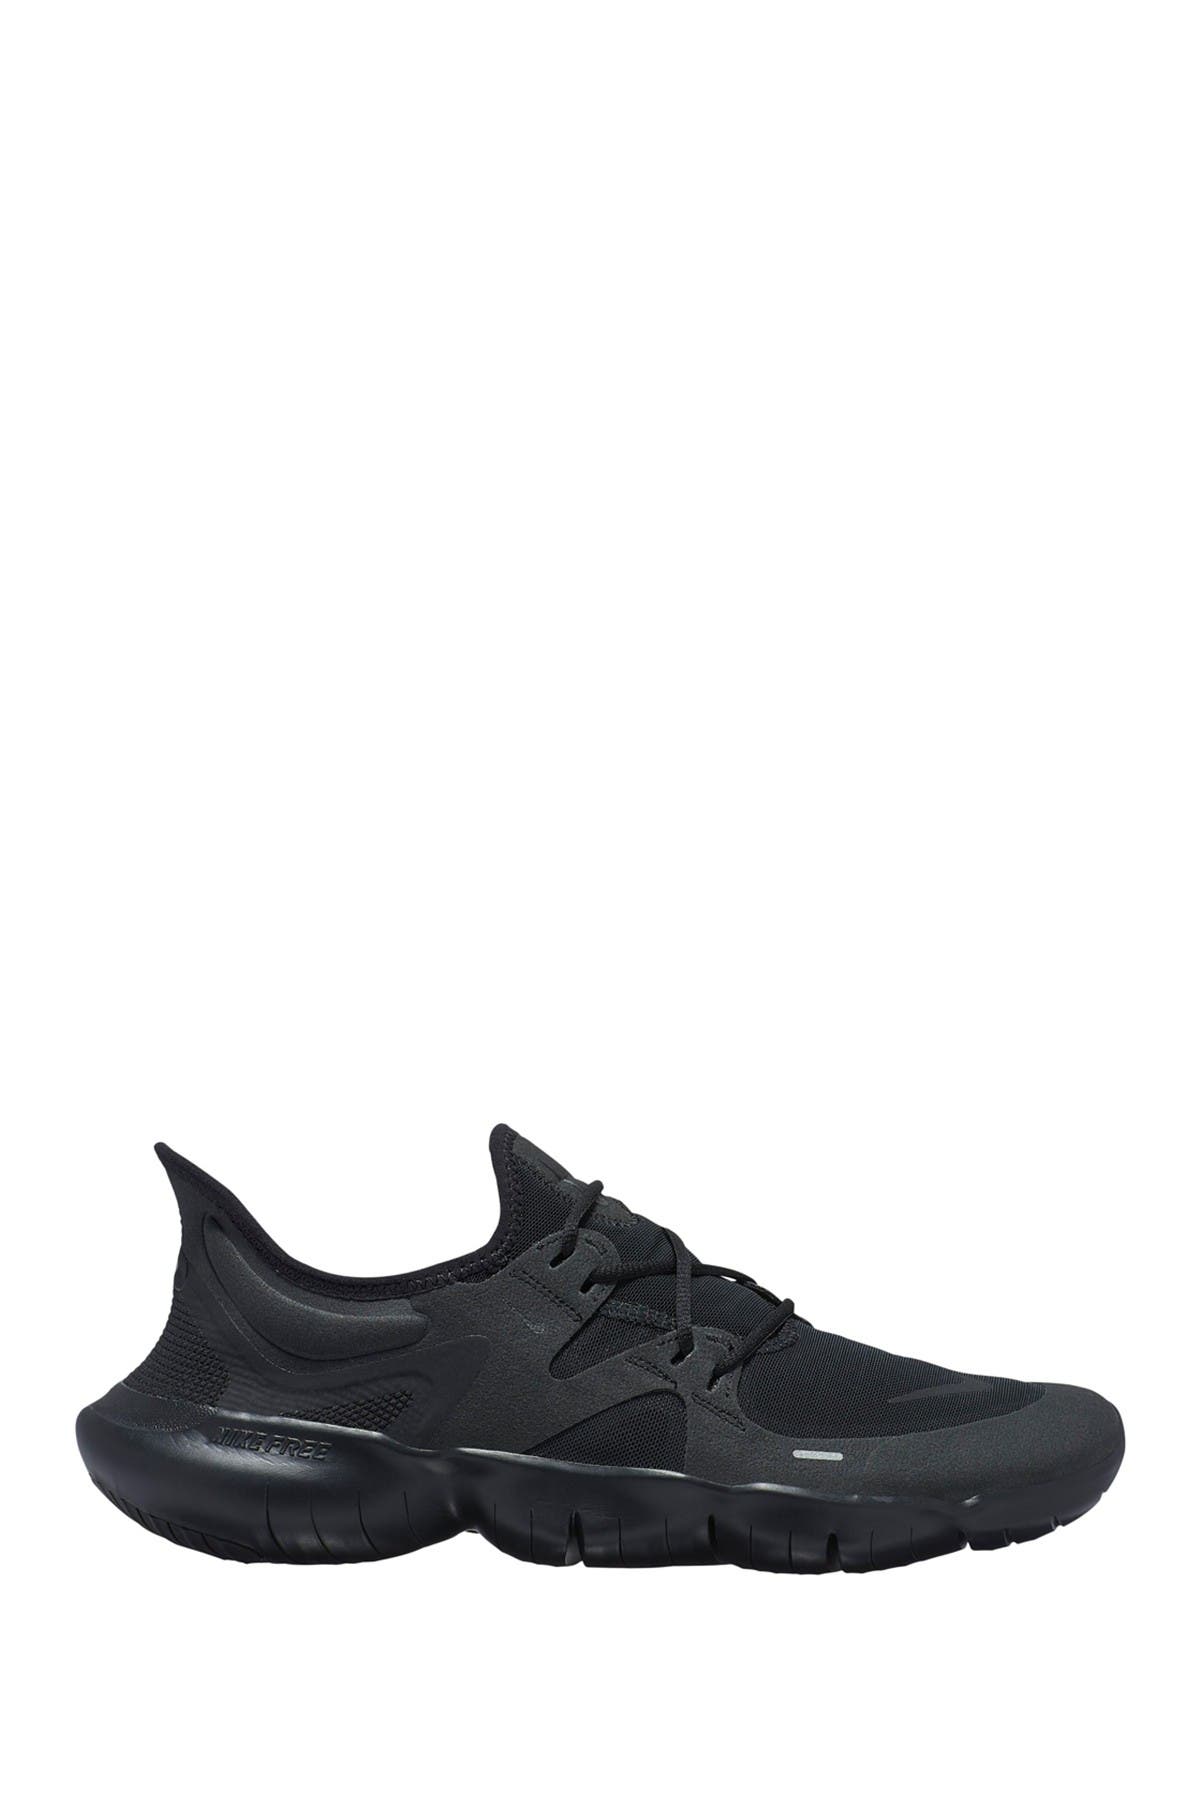 Nike | Free RN 5.0 Running Shoe 